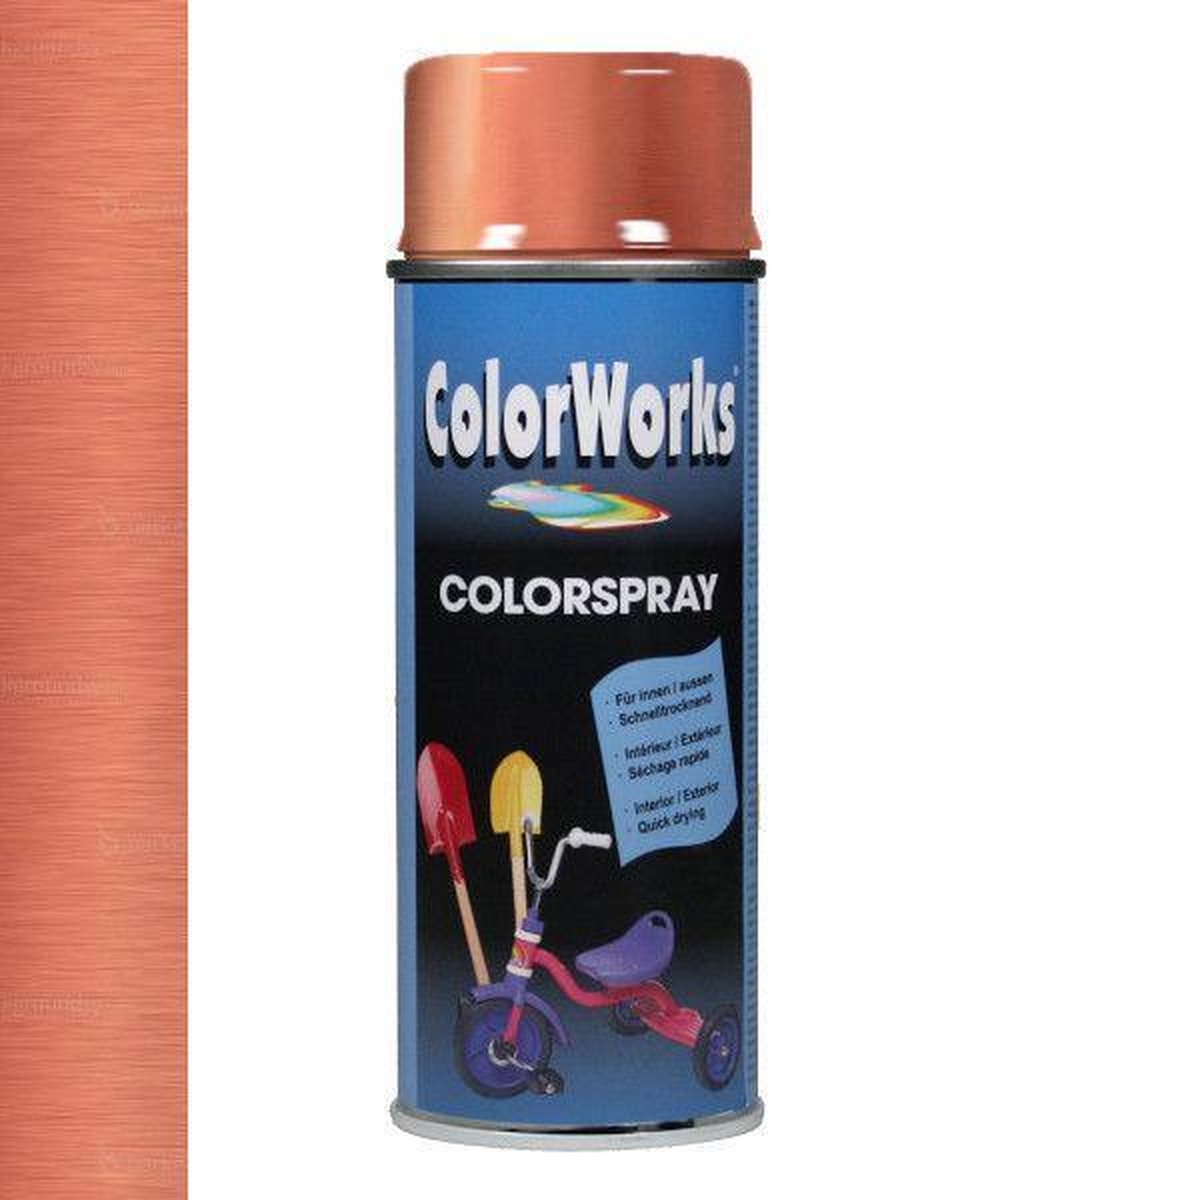 Zuidwest Hulpeloosheid Iedereen Colorworks Colorspray - Hoogglans - 400 ml - Koper | bol.com